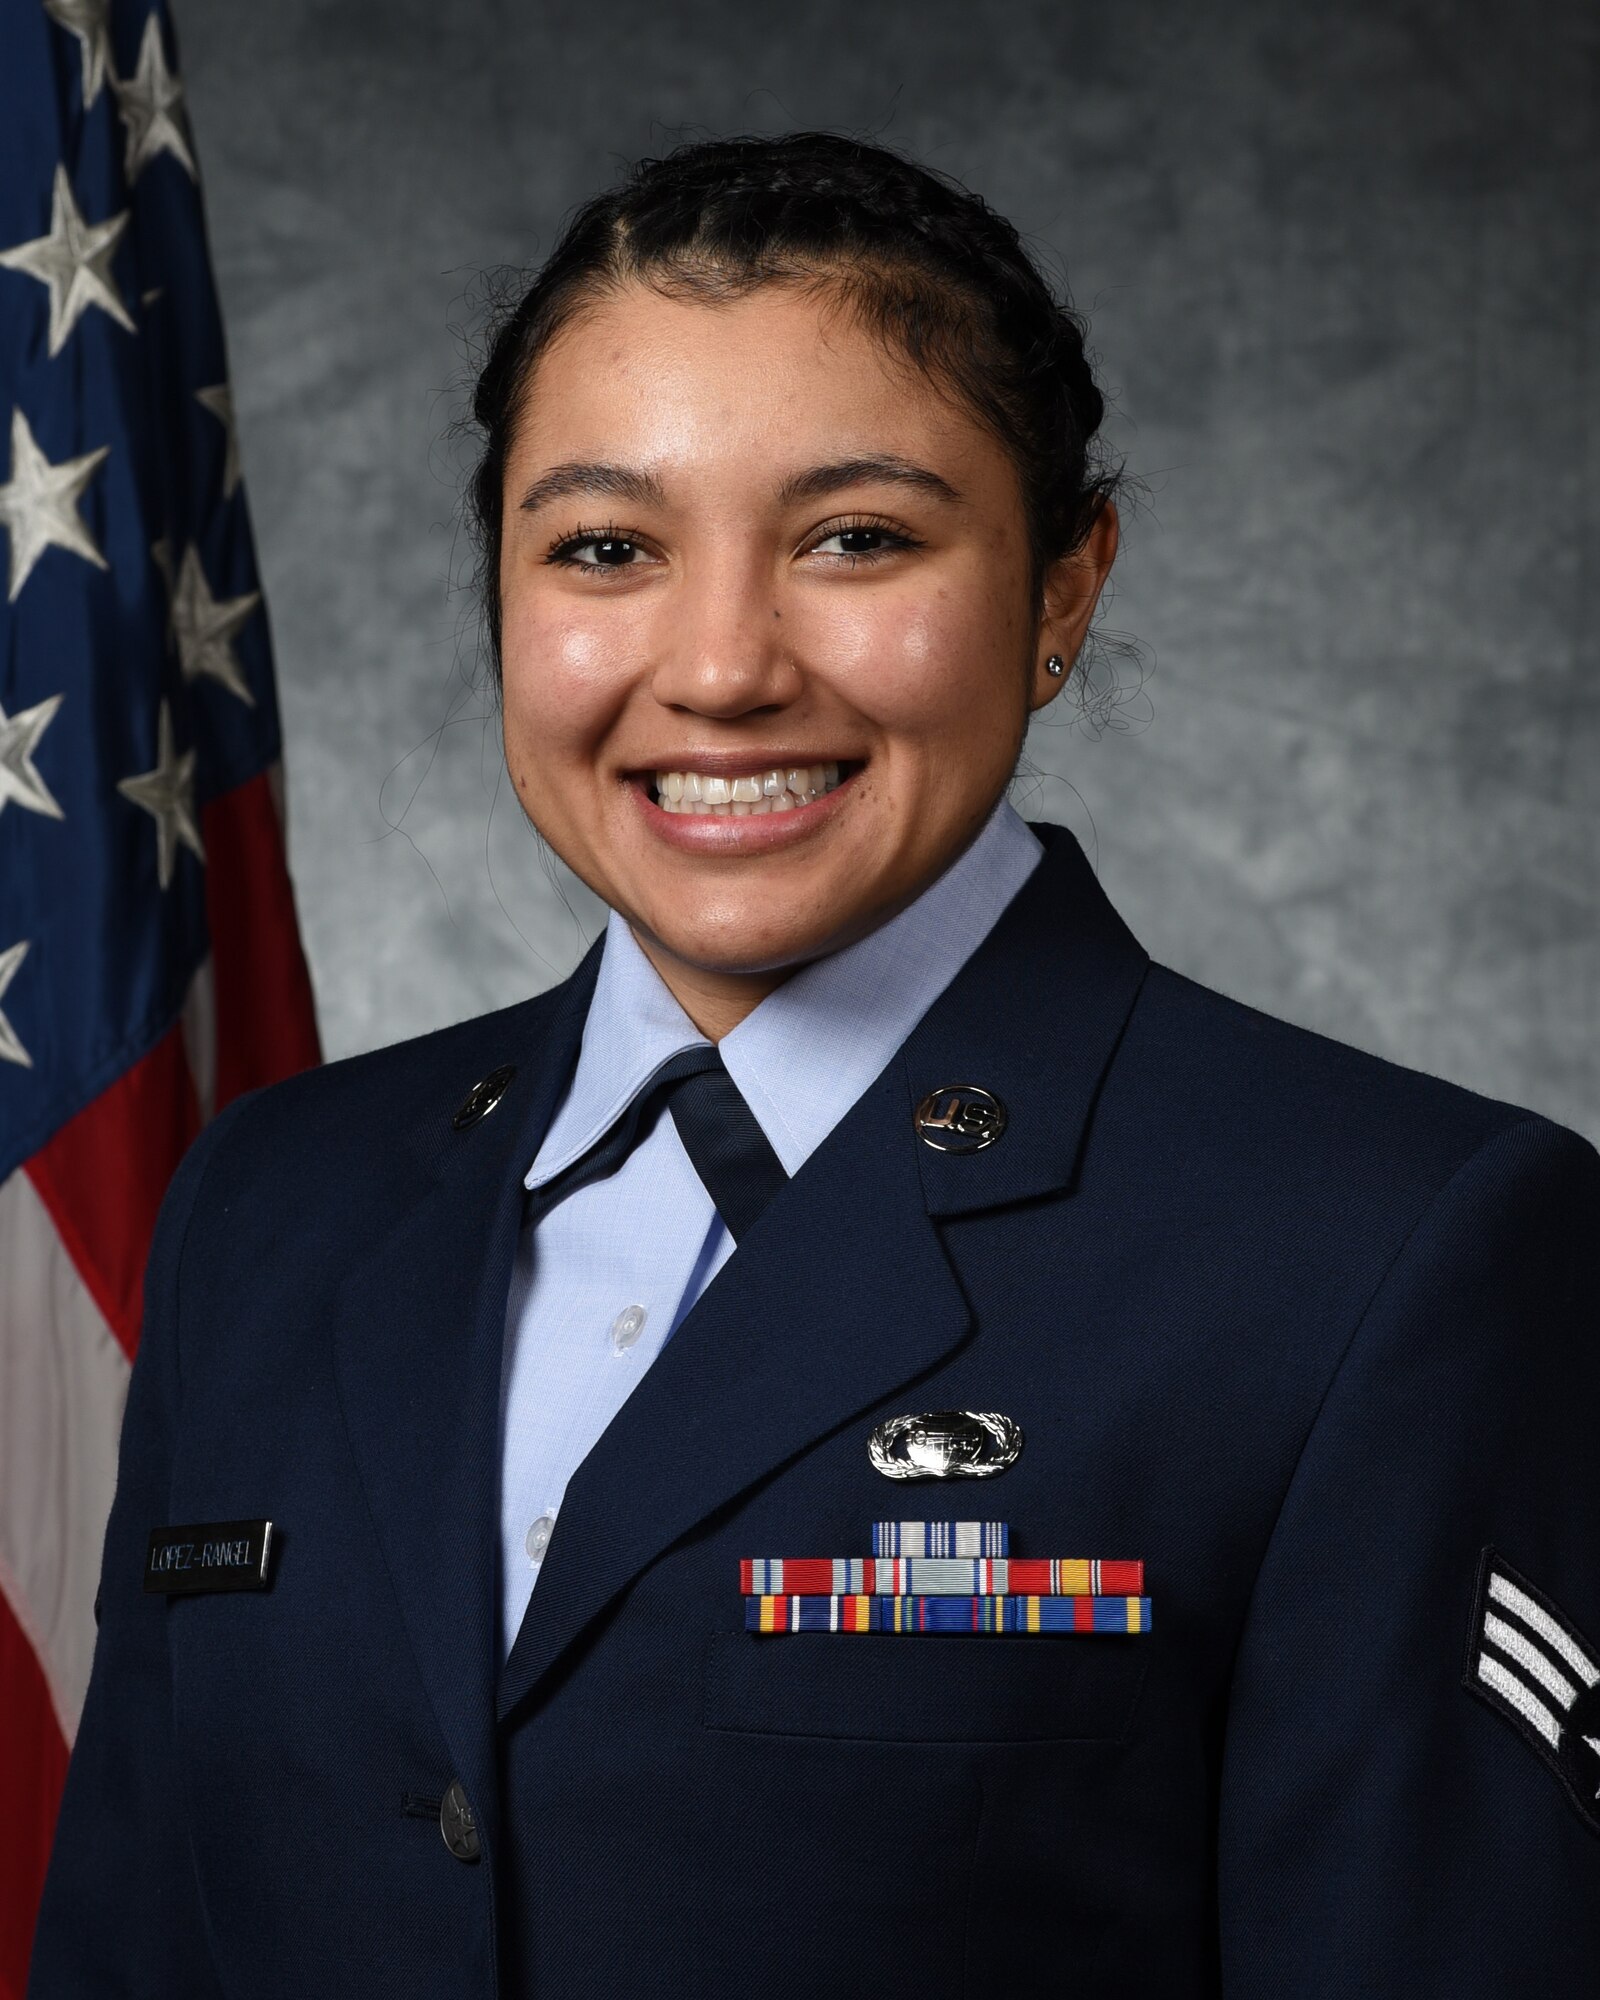 Official portrait of U.S. Air Force Senior Airman Dianna Lopez-Rangel.